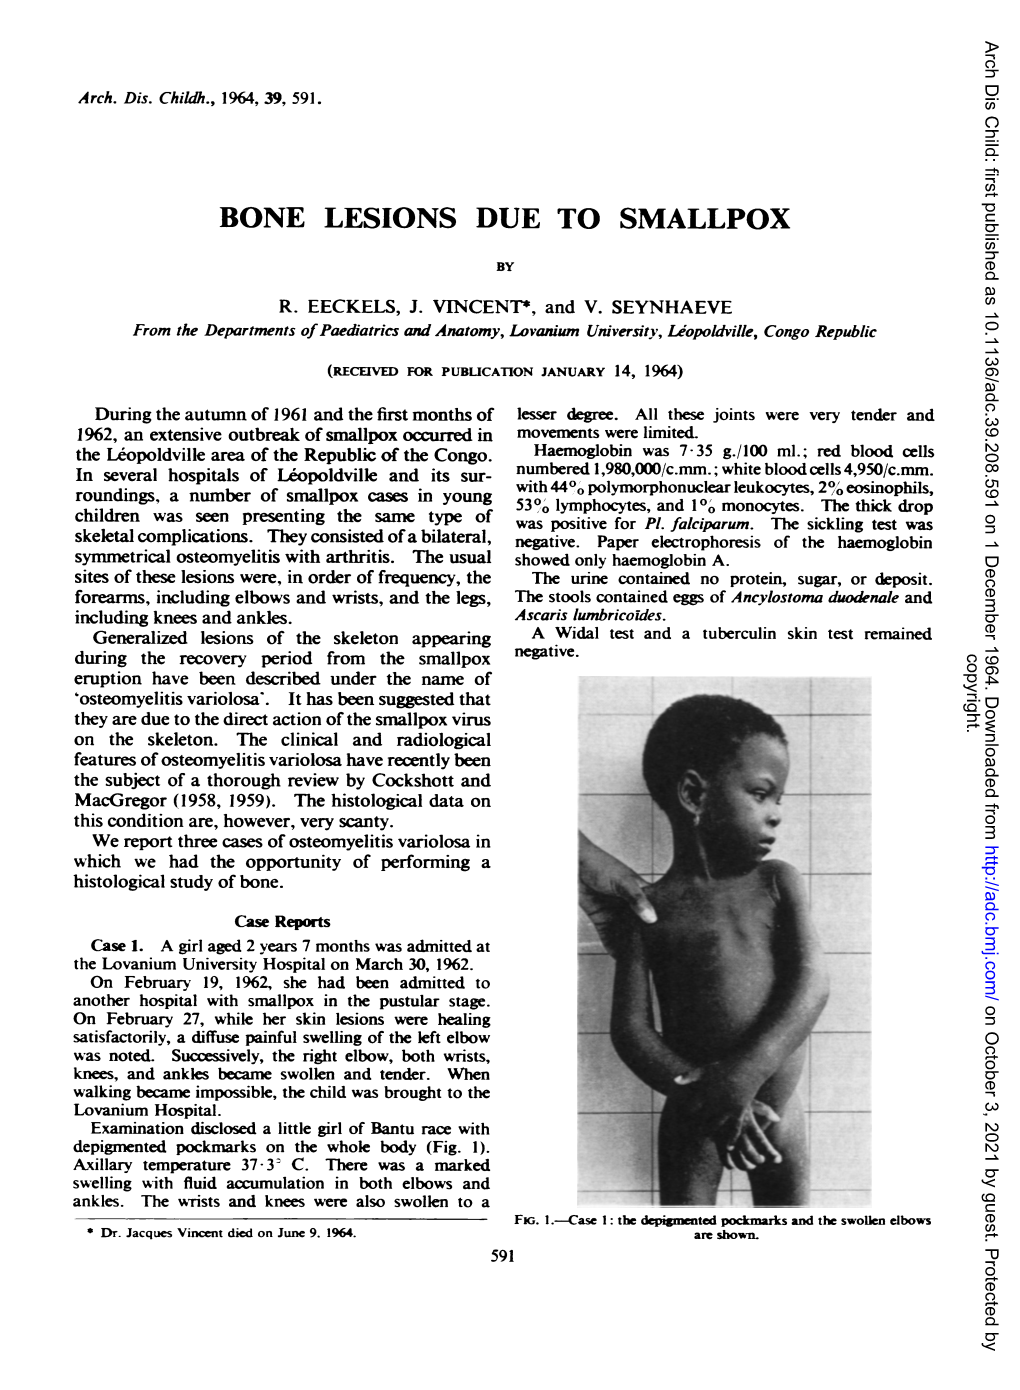 Bone Lesions Due to Smallpox